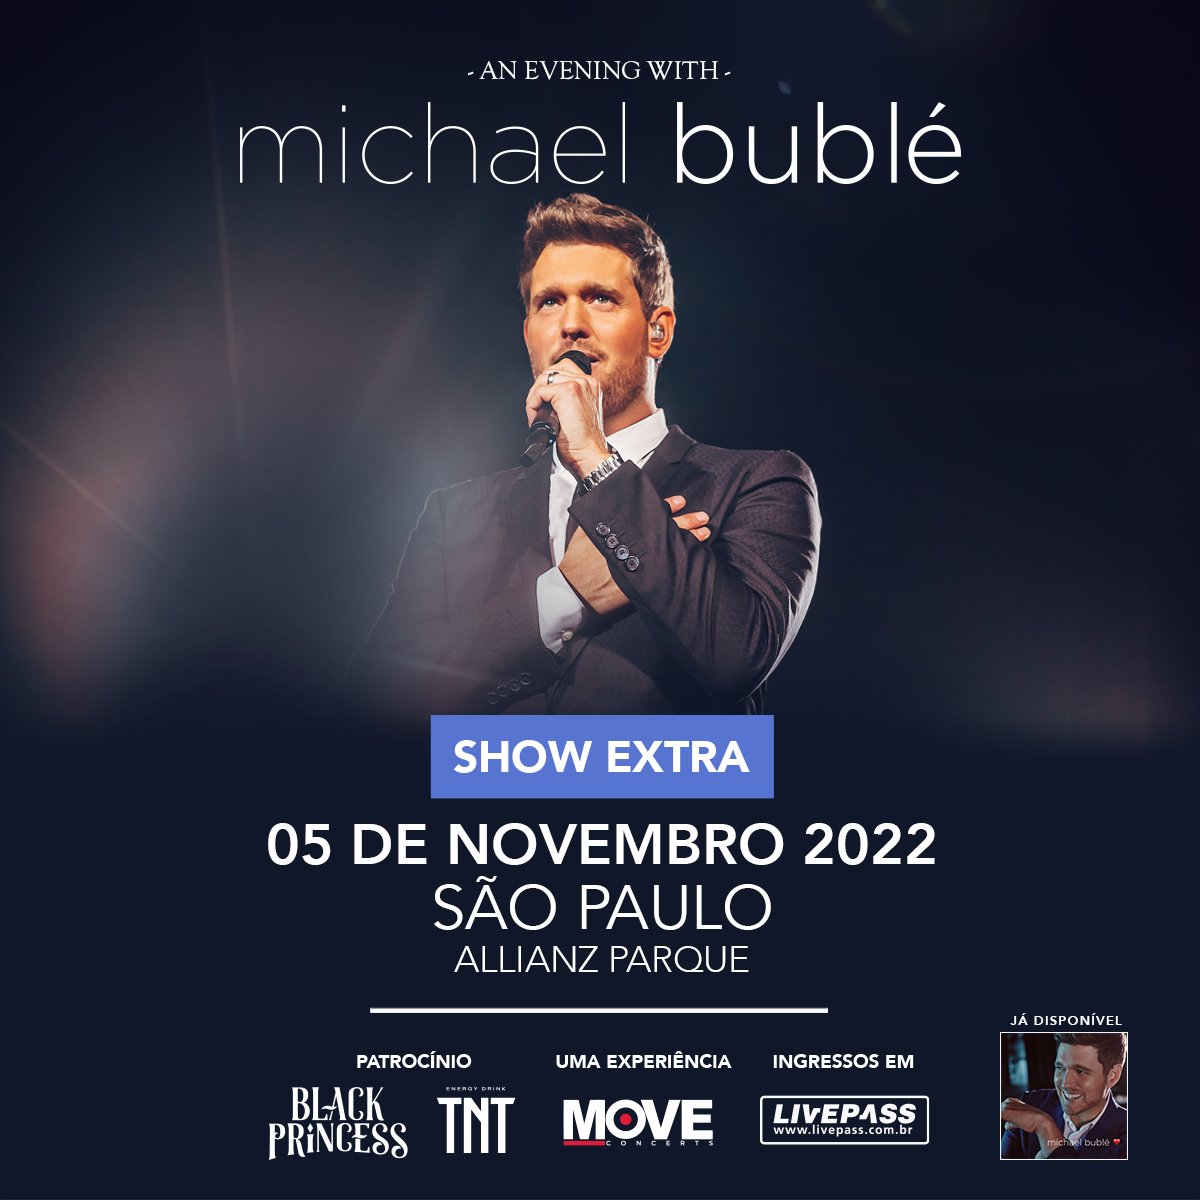 SHOW EXTRA! Atendendo aos pedidos dos fãs, a Move Concerts Brasil anuncia show extra do artista Michael Bublé, que acontecerá no Allianz Parque, em São Paulo, no sábado, dia 5 de novembro de 2022. Vendas a partir do dia 24 de novembro em livepass.com.br #MichaelBublé